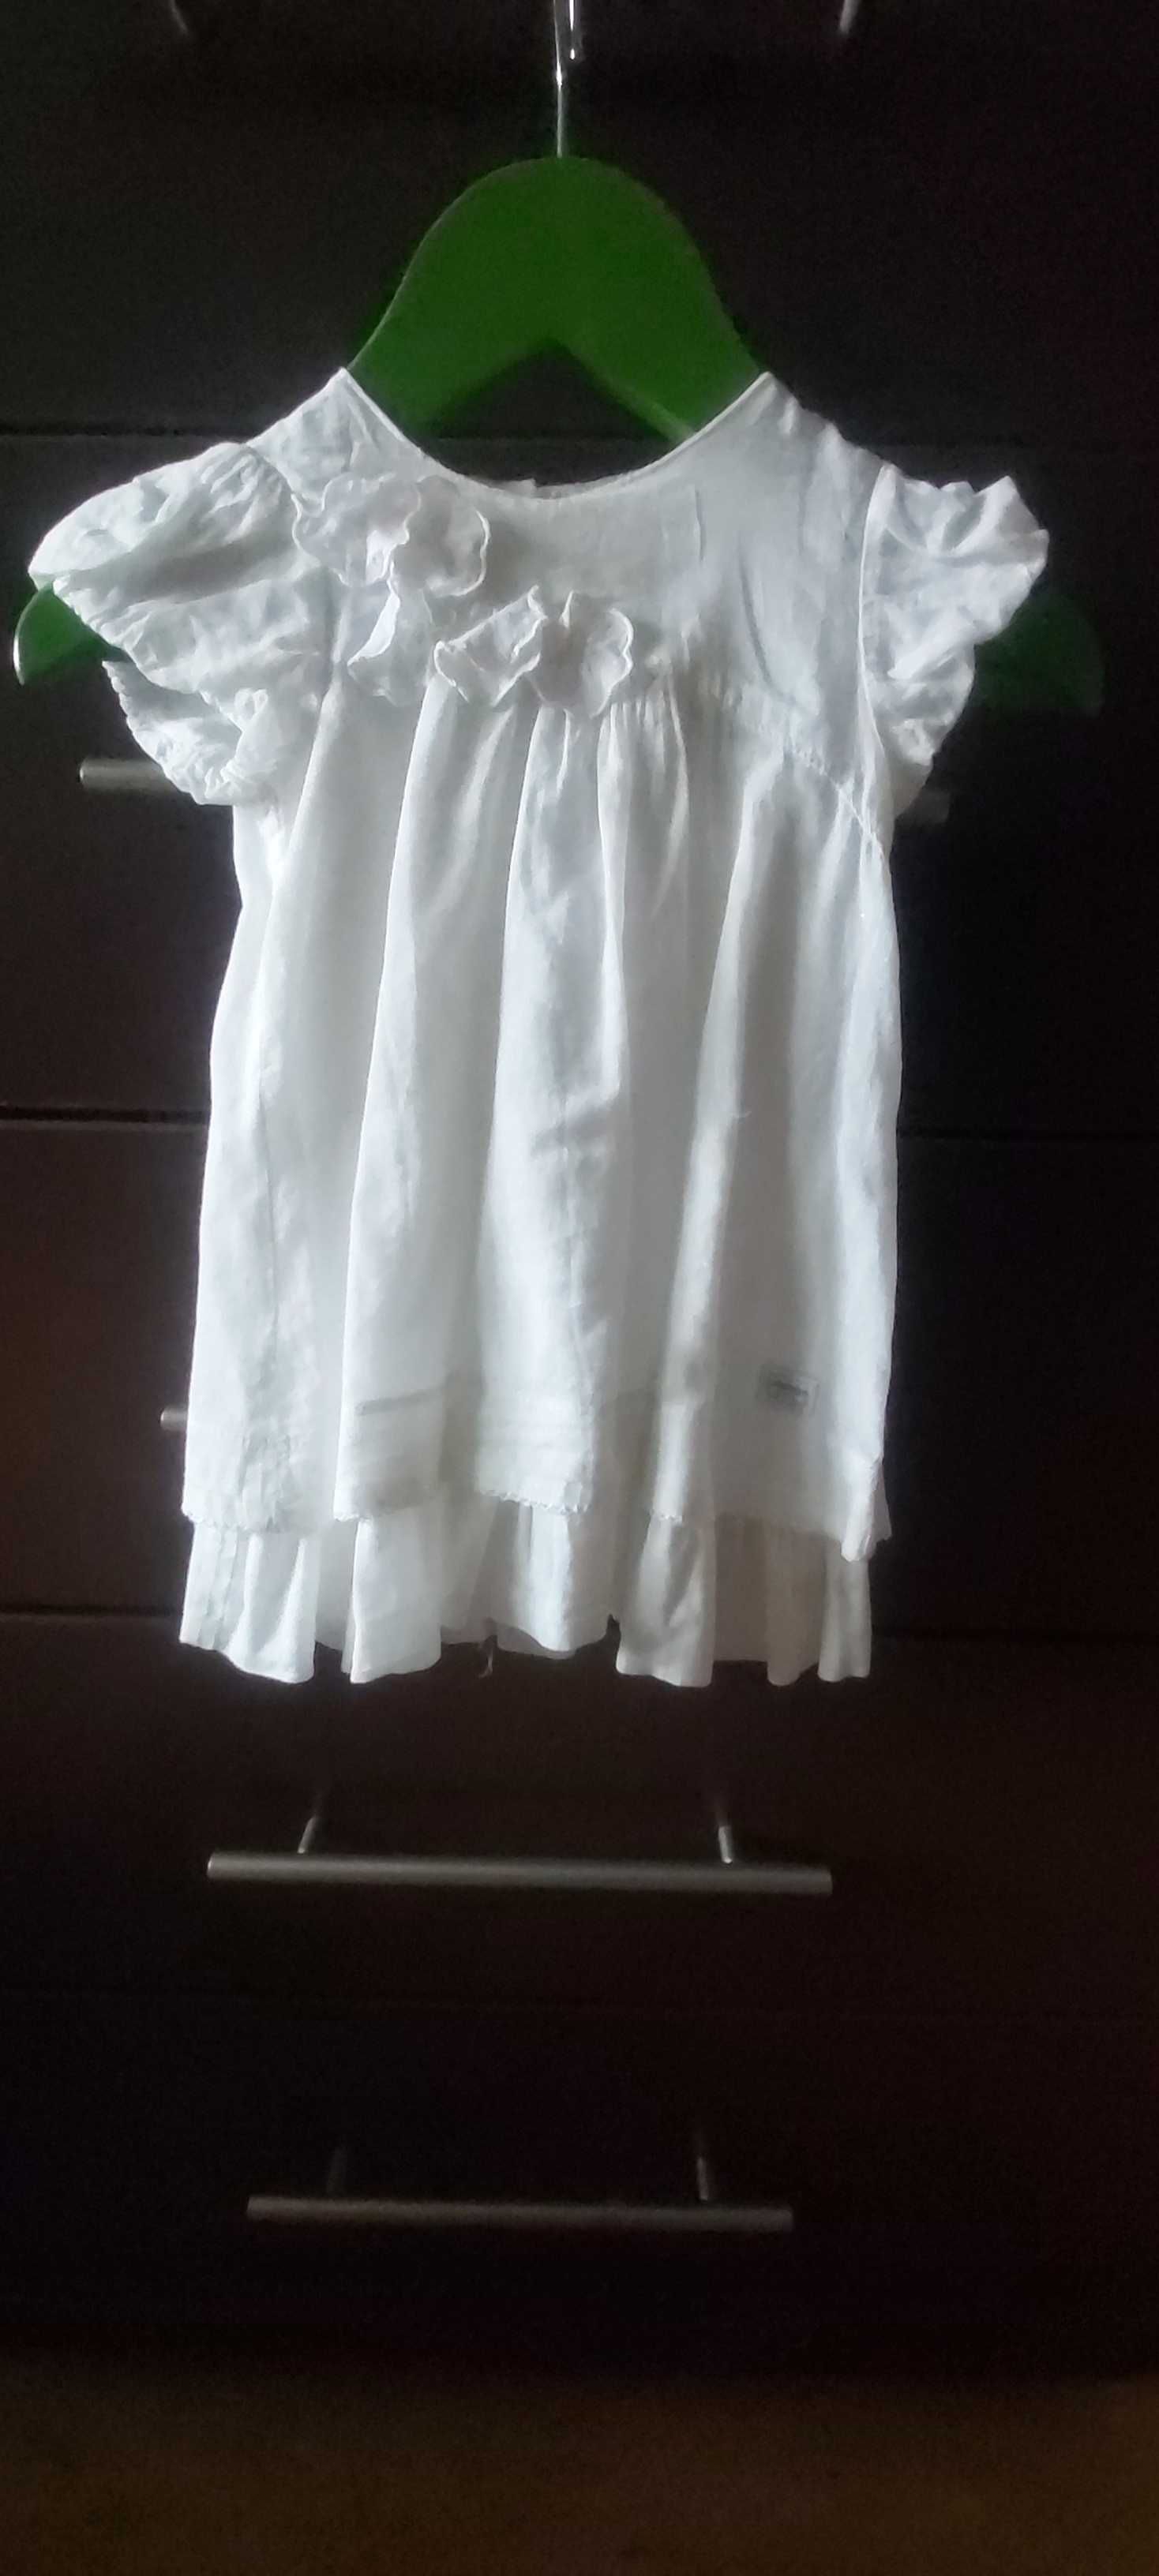 Zjawiskowa kremowa sukienka dla dziewczynki idealna na chrzciny